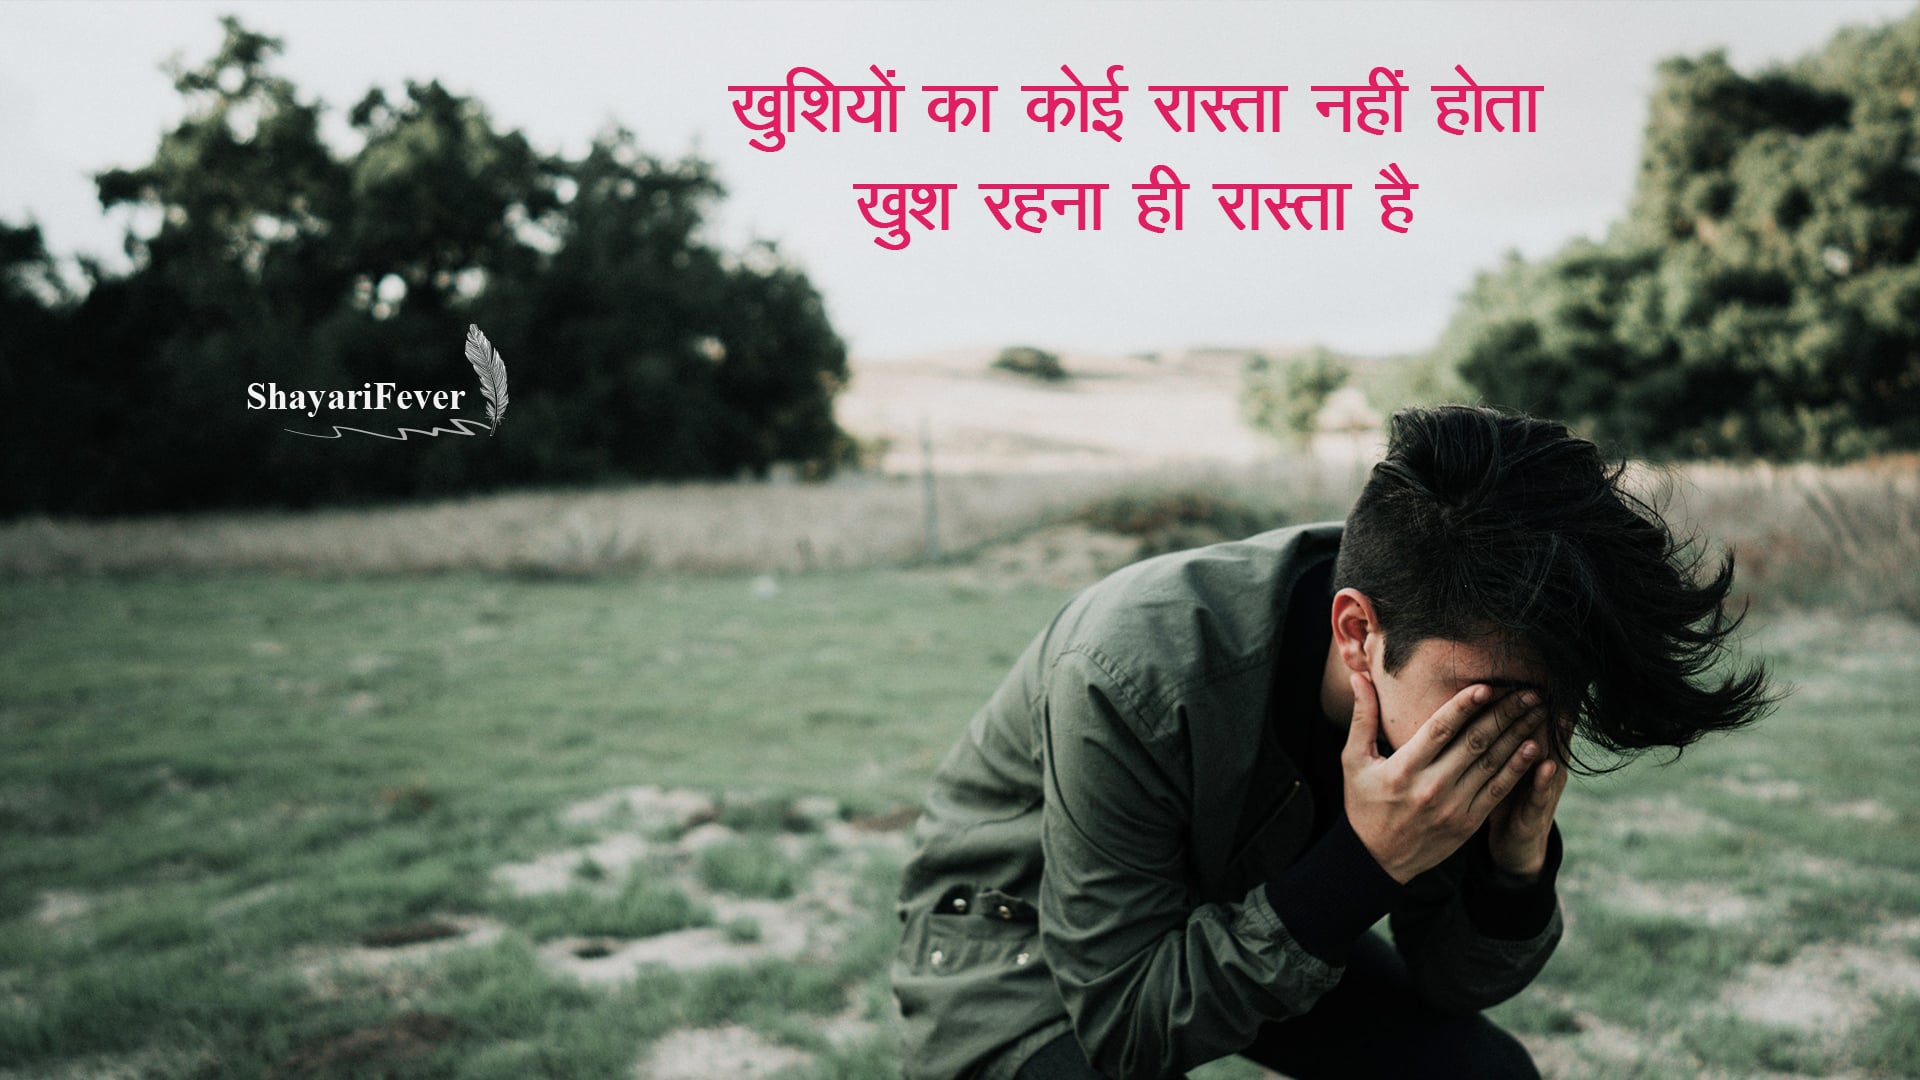 50+ Sad Shayari In Hindi For Life Emotional Shayari In Hindi on Life